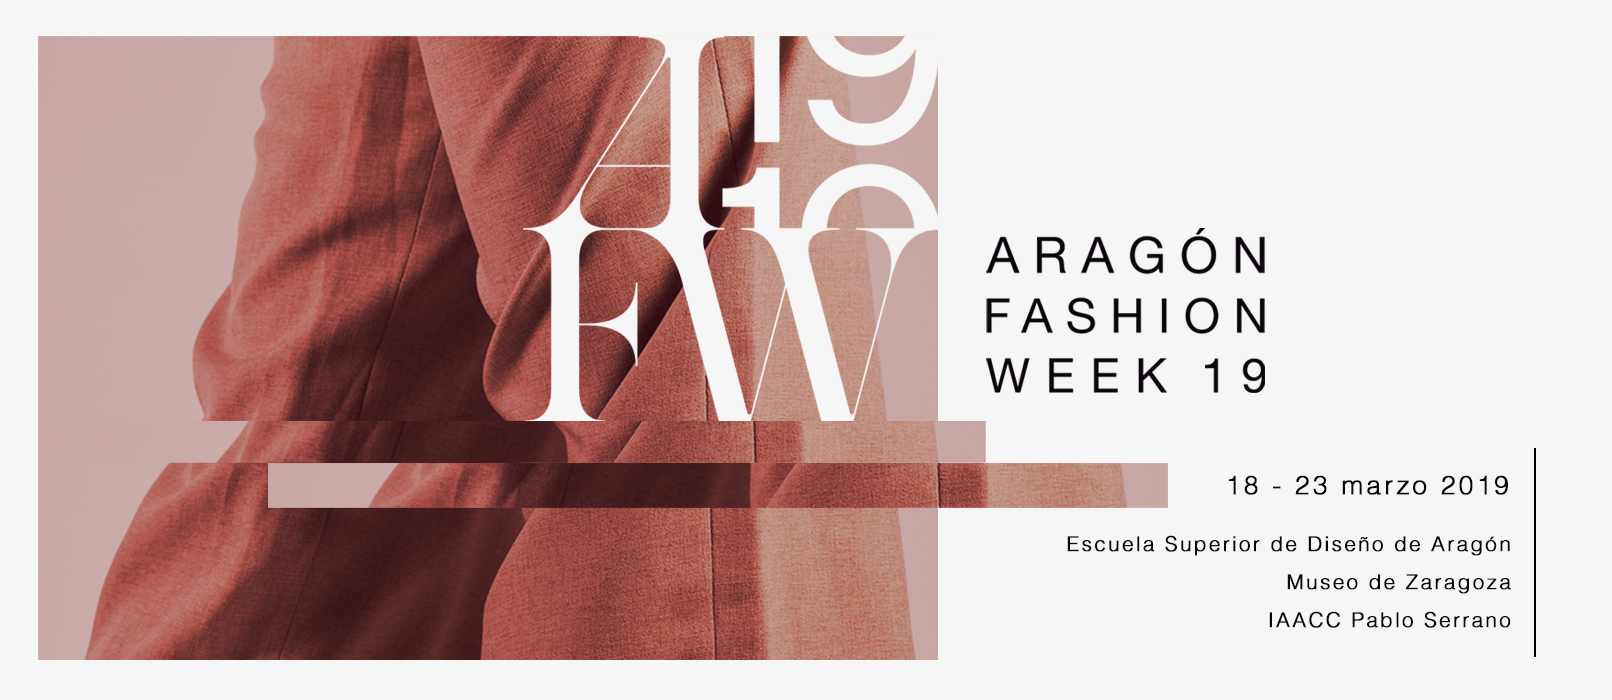 Aragón Fashion Week 2019 - Espectáculos